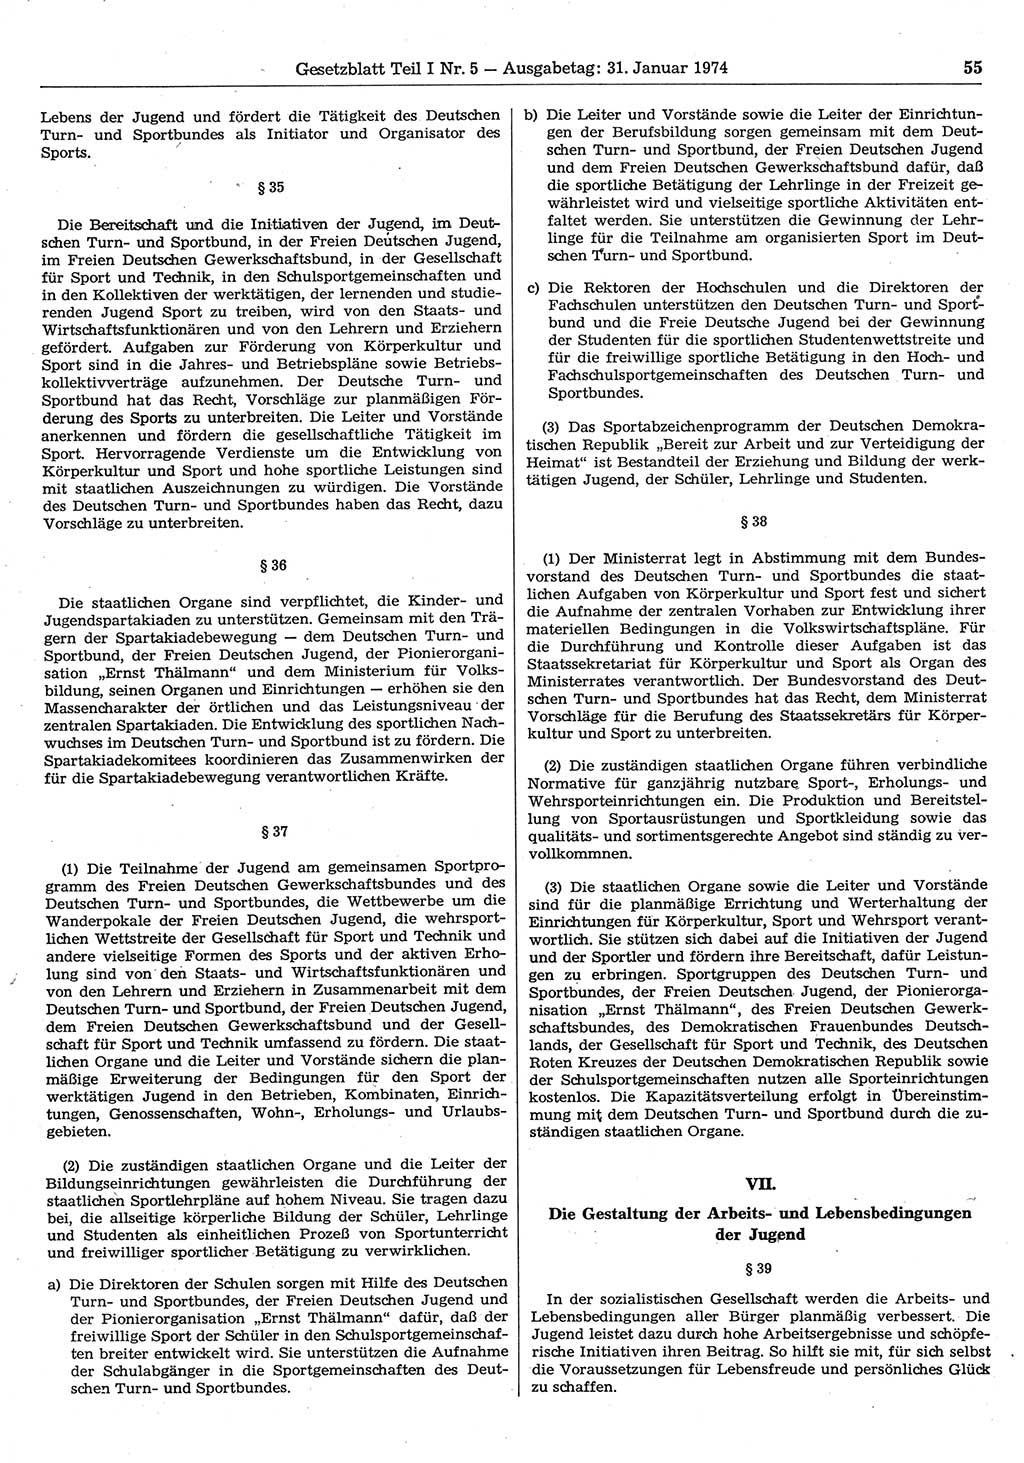 Gesetzblatt (GBl.) der Deutschen Demokratischen Republik (DDR) Teil Ⅰ 1974, Seite 55 (GBl. DDR Ⅰ 1974, S. 55)